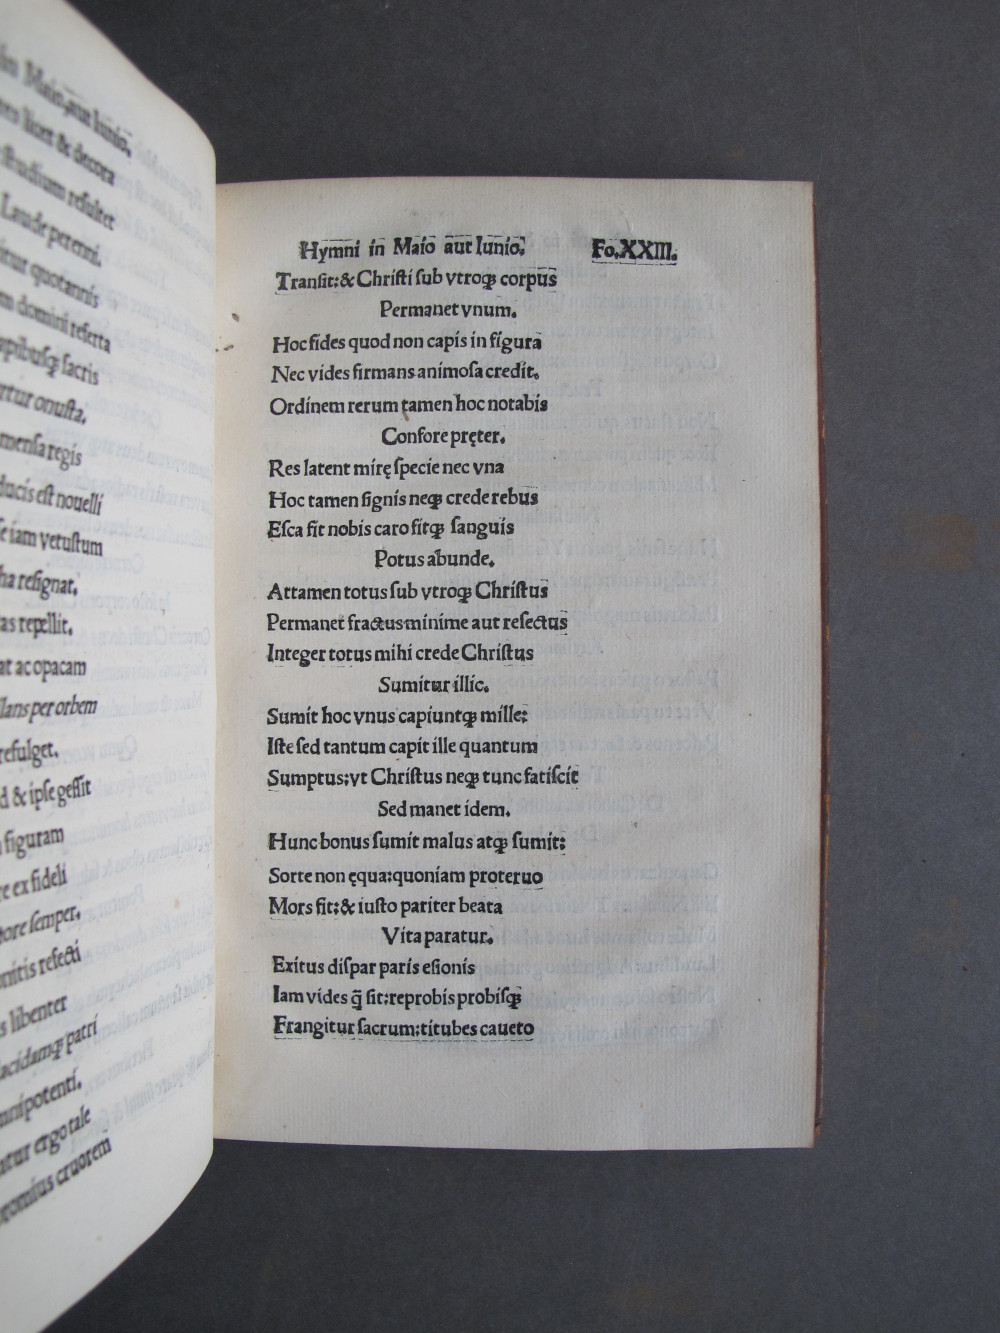 Folio 23 recto